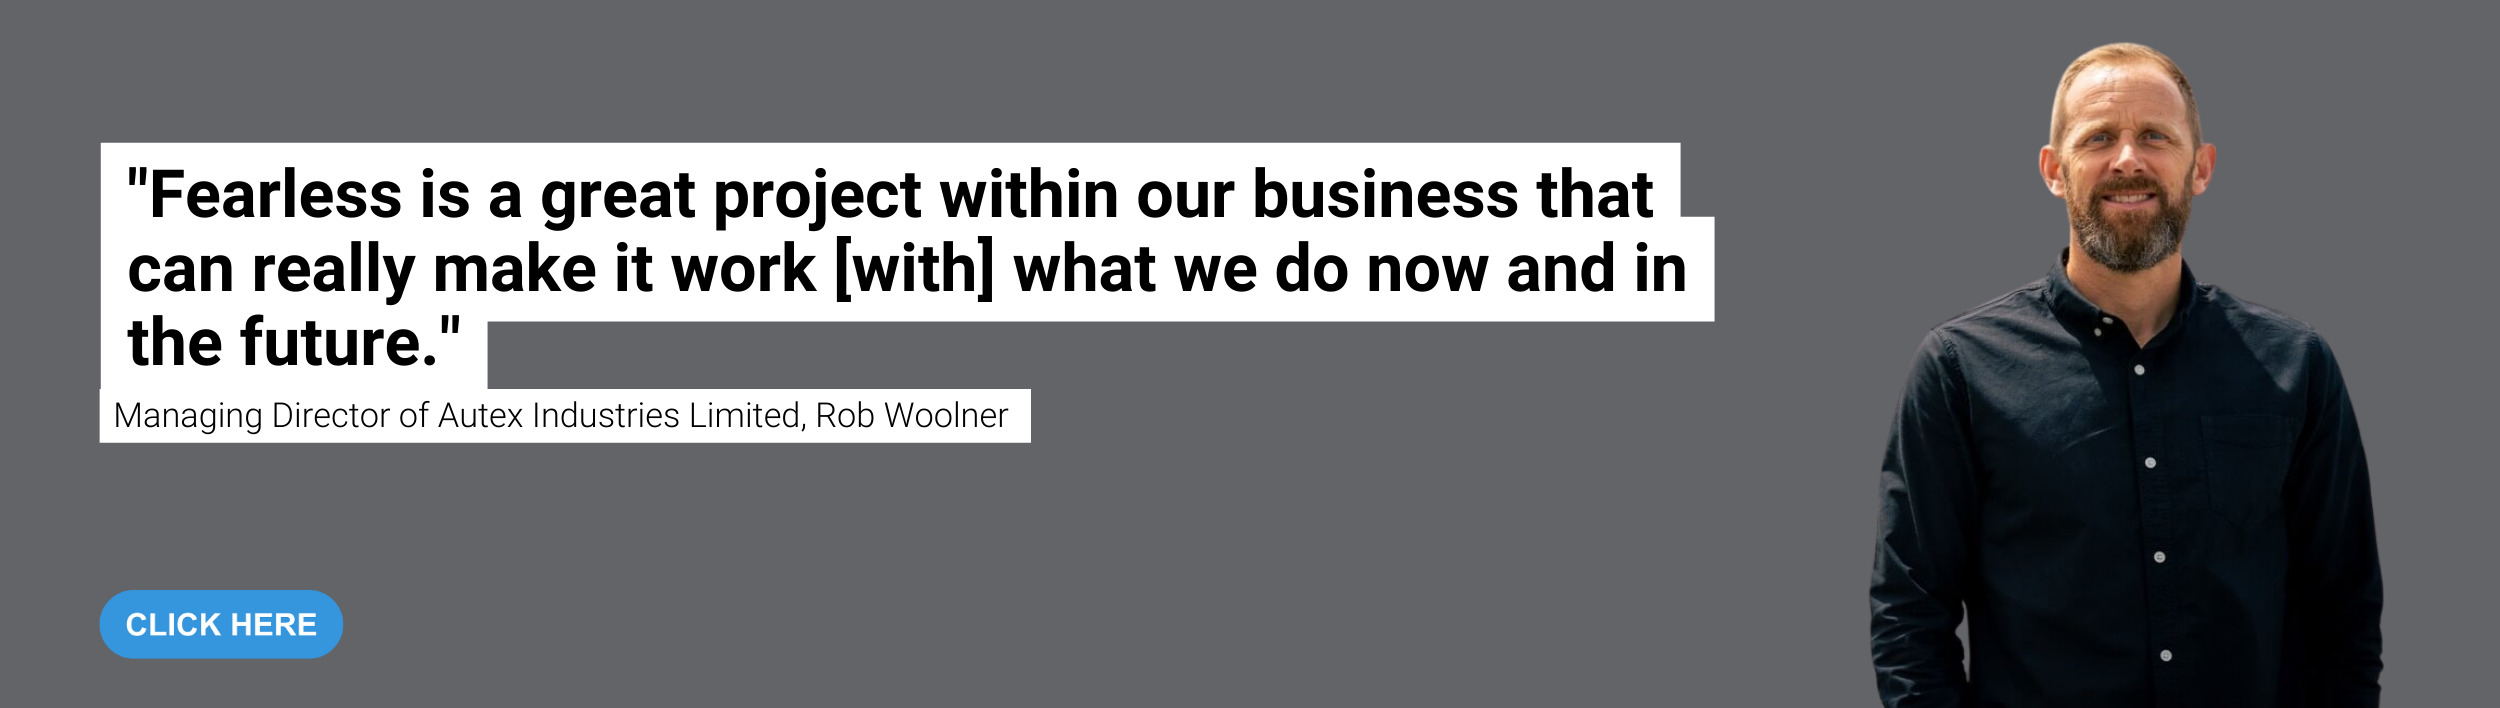 Rob Woolner on leadership